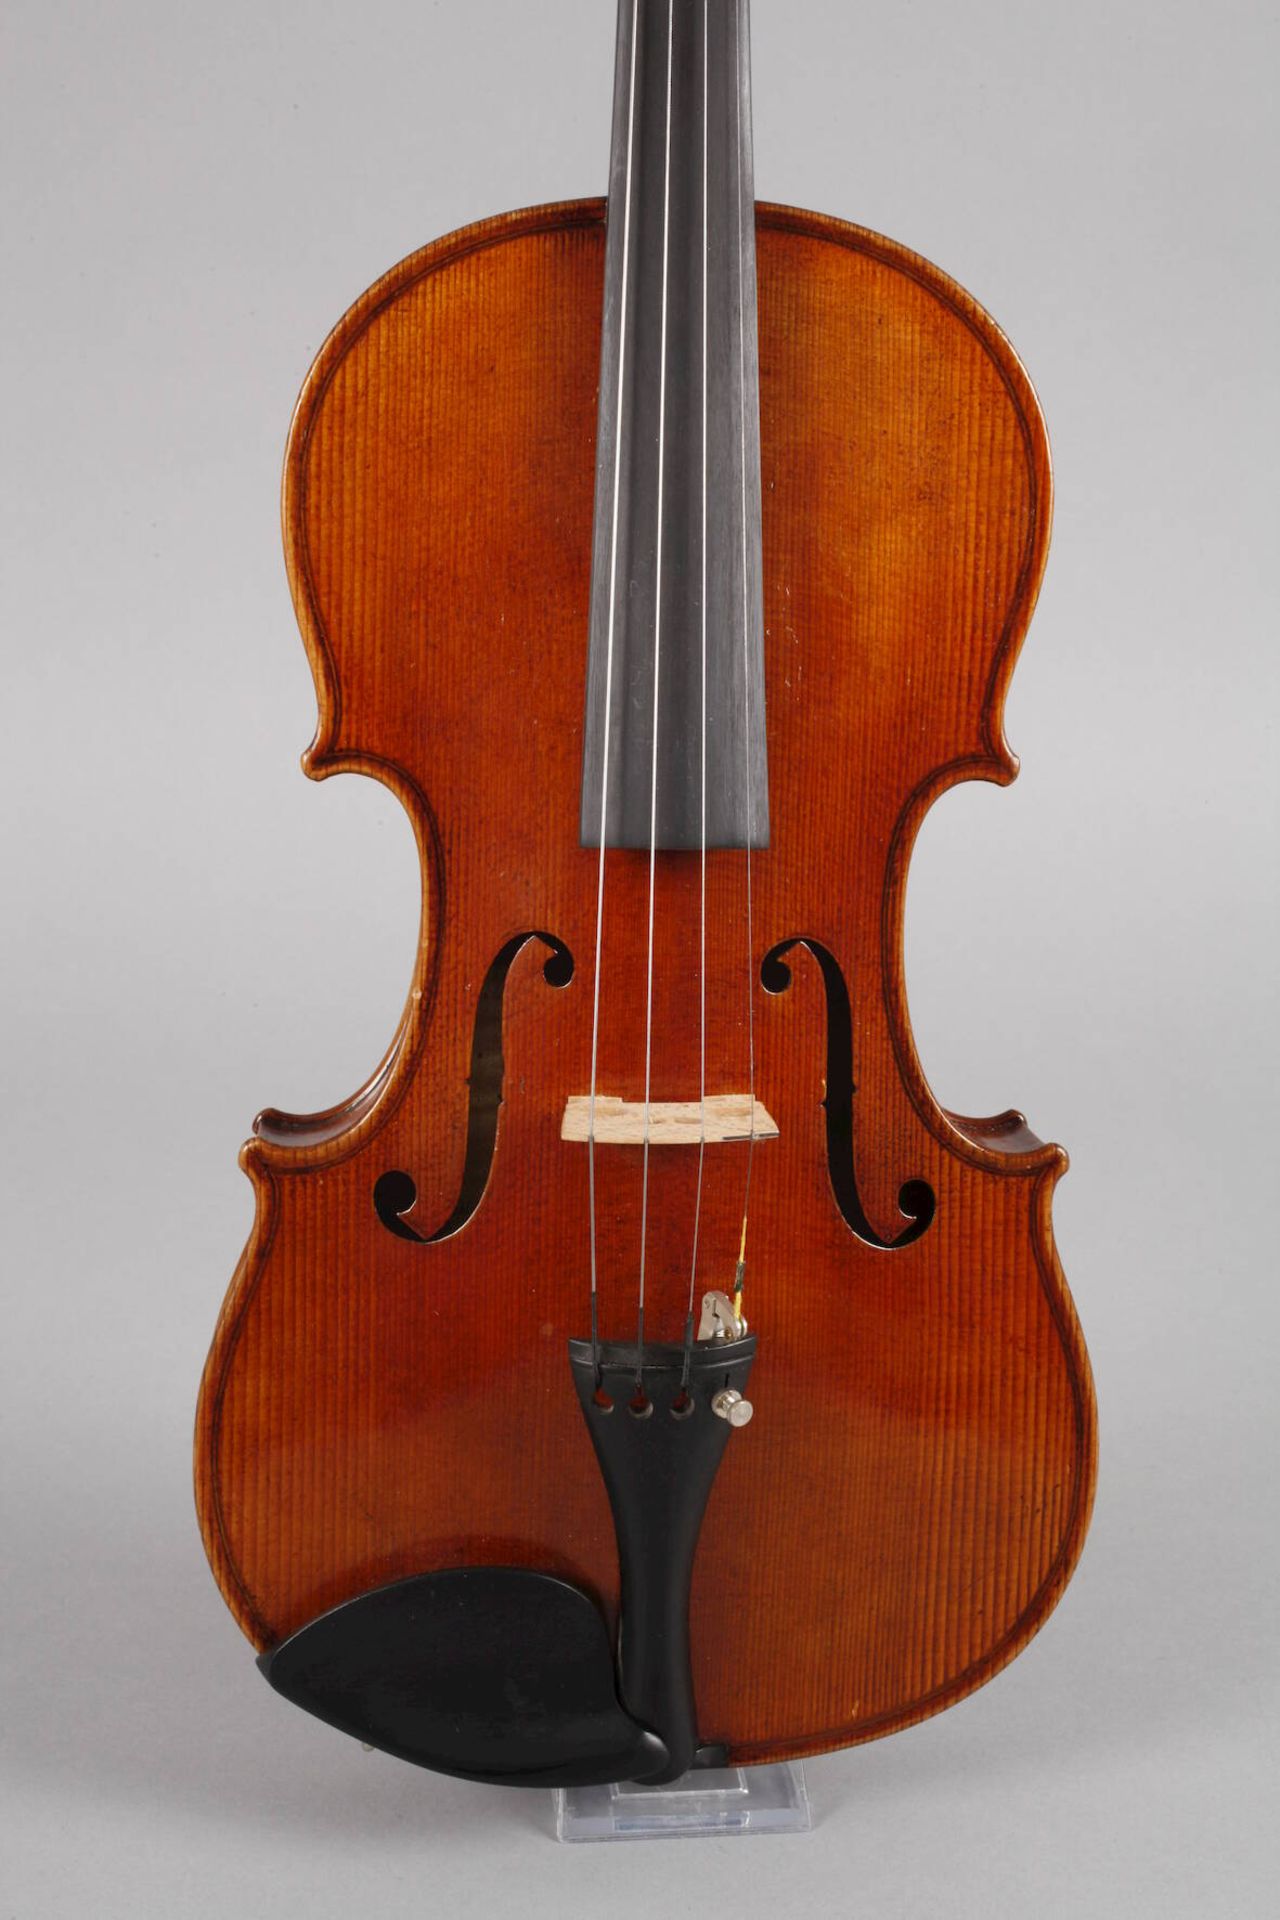 Violine1930er Jahre, ohne Klebezettel, geteilter, gleichmäßig geflammter Boden im gelblichen Lack, - Bild 2 aus 6